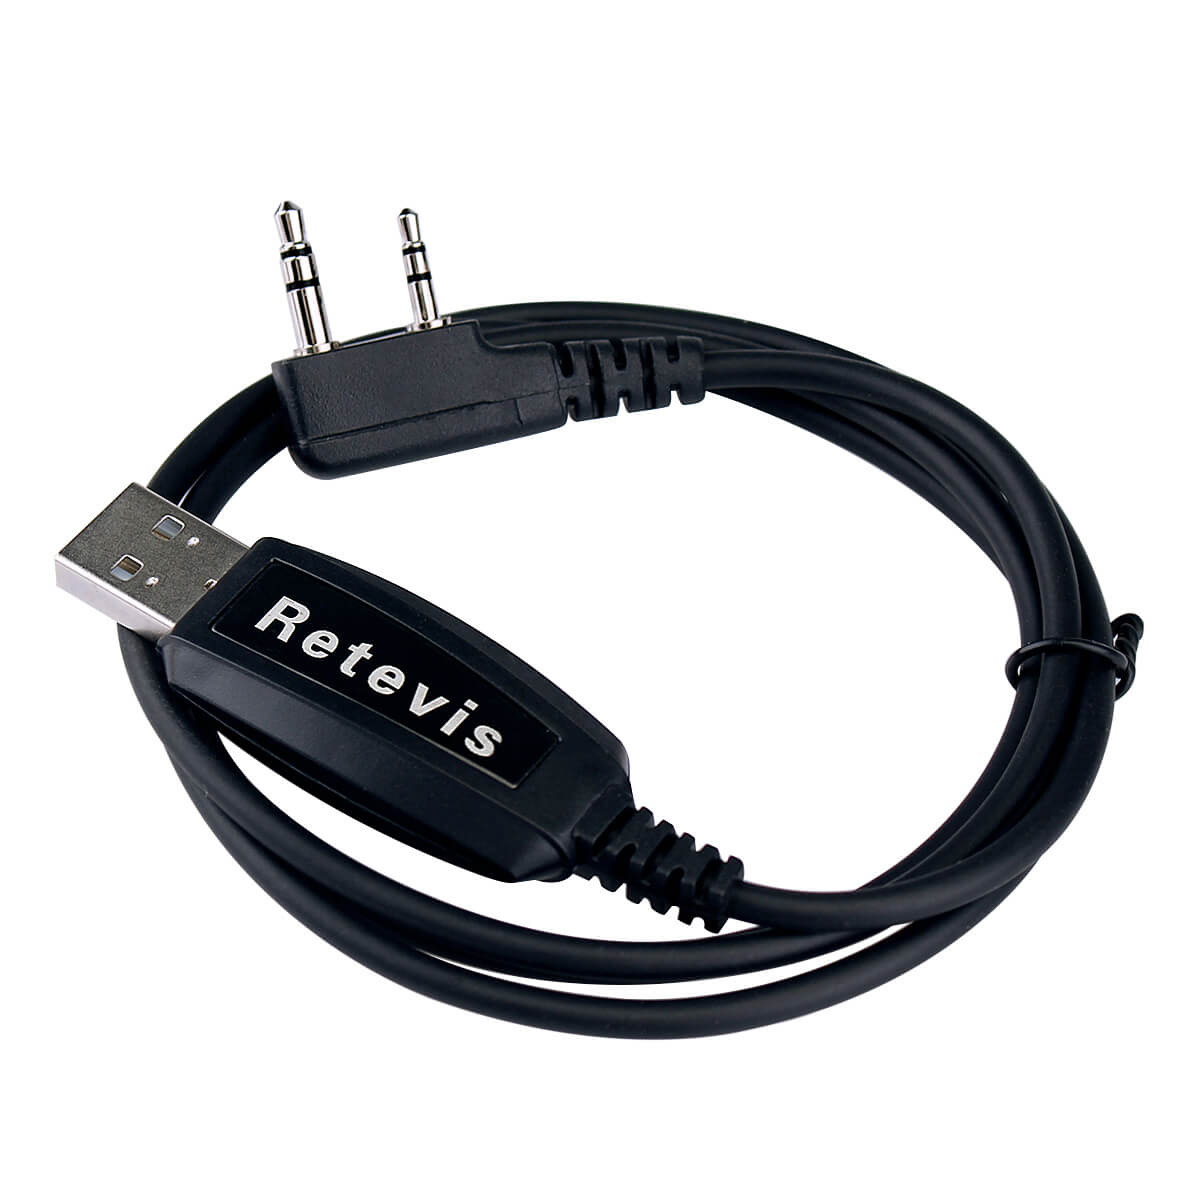 Retevis-Prog-Cable